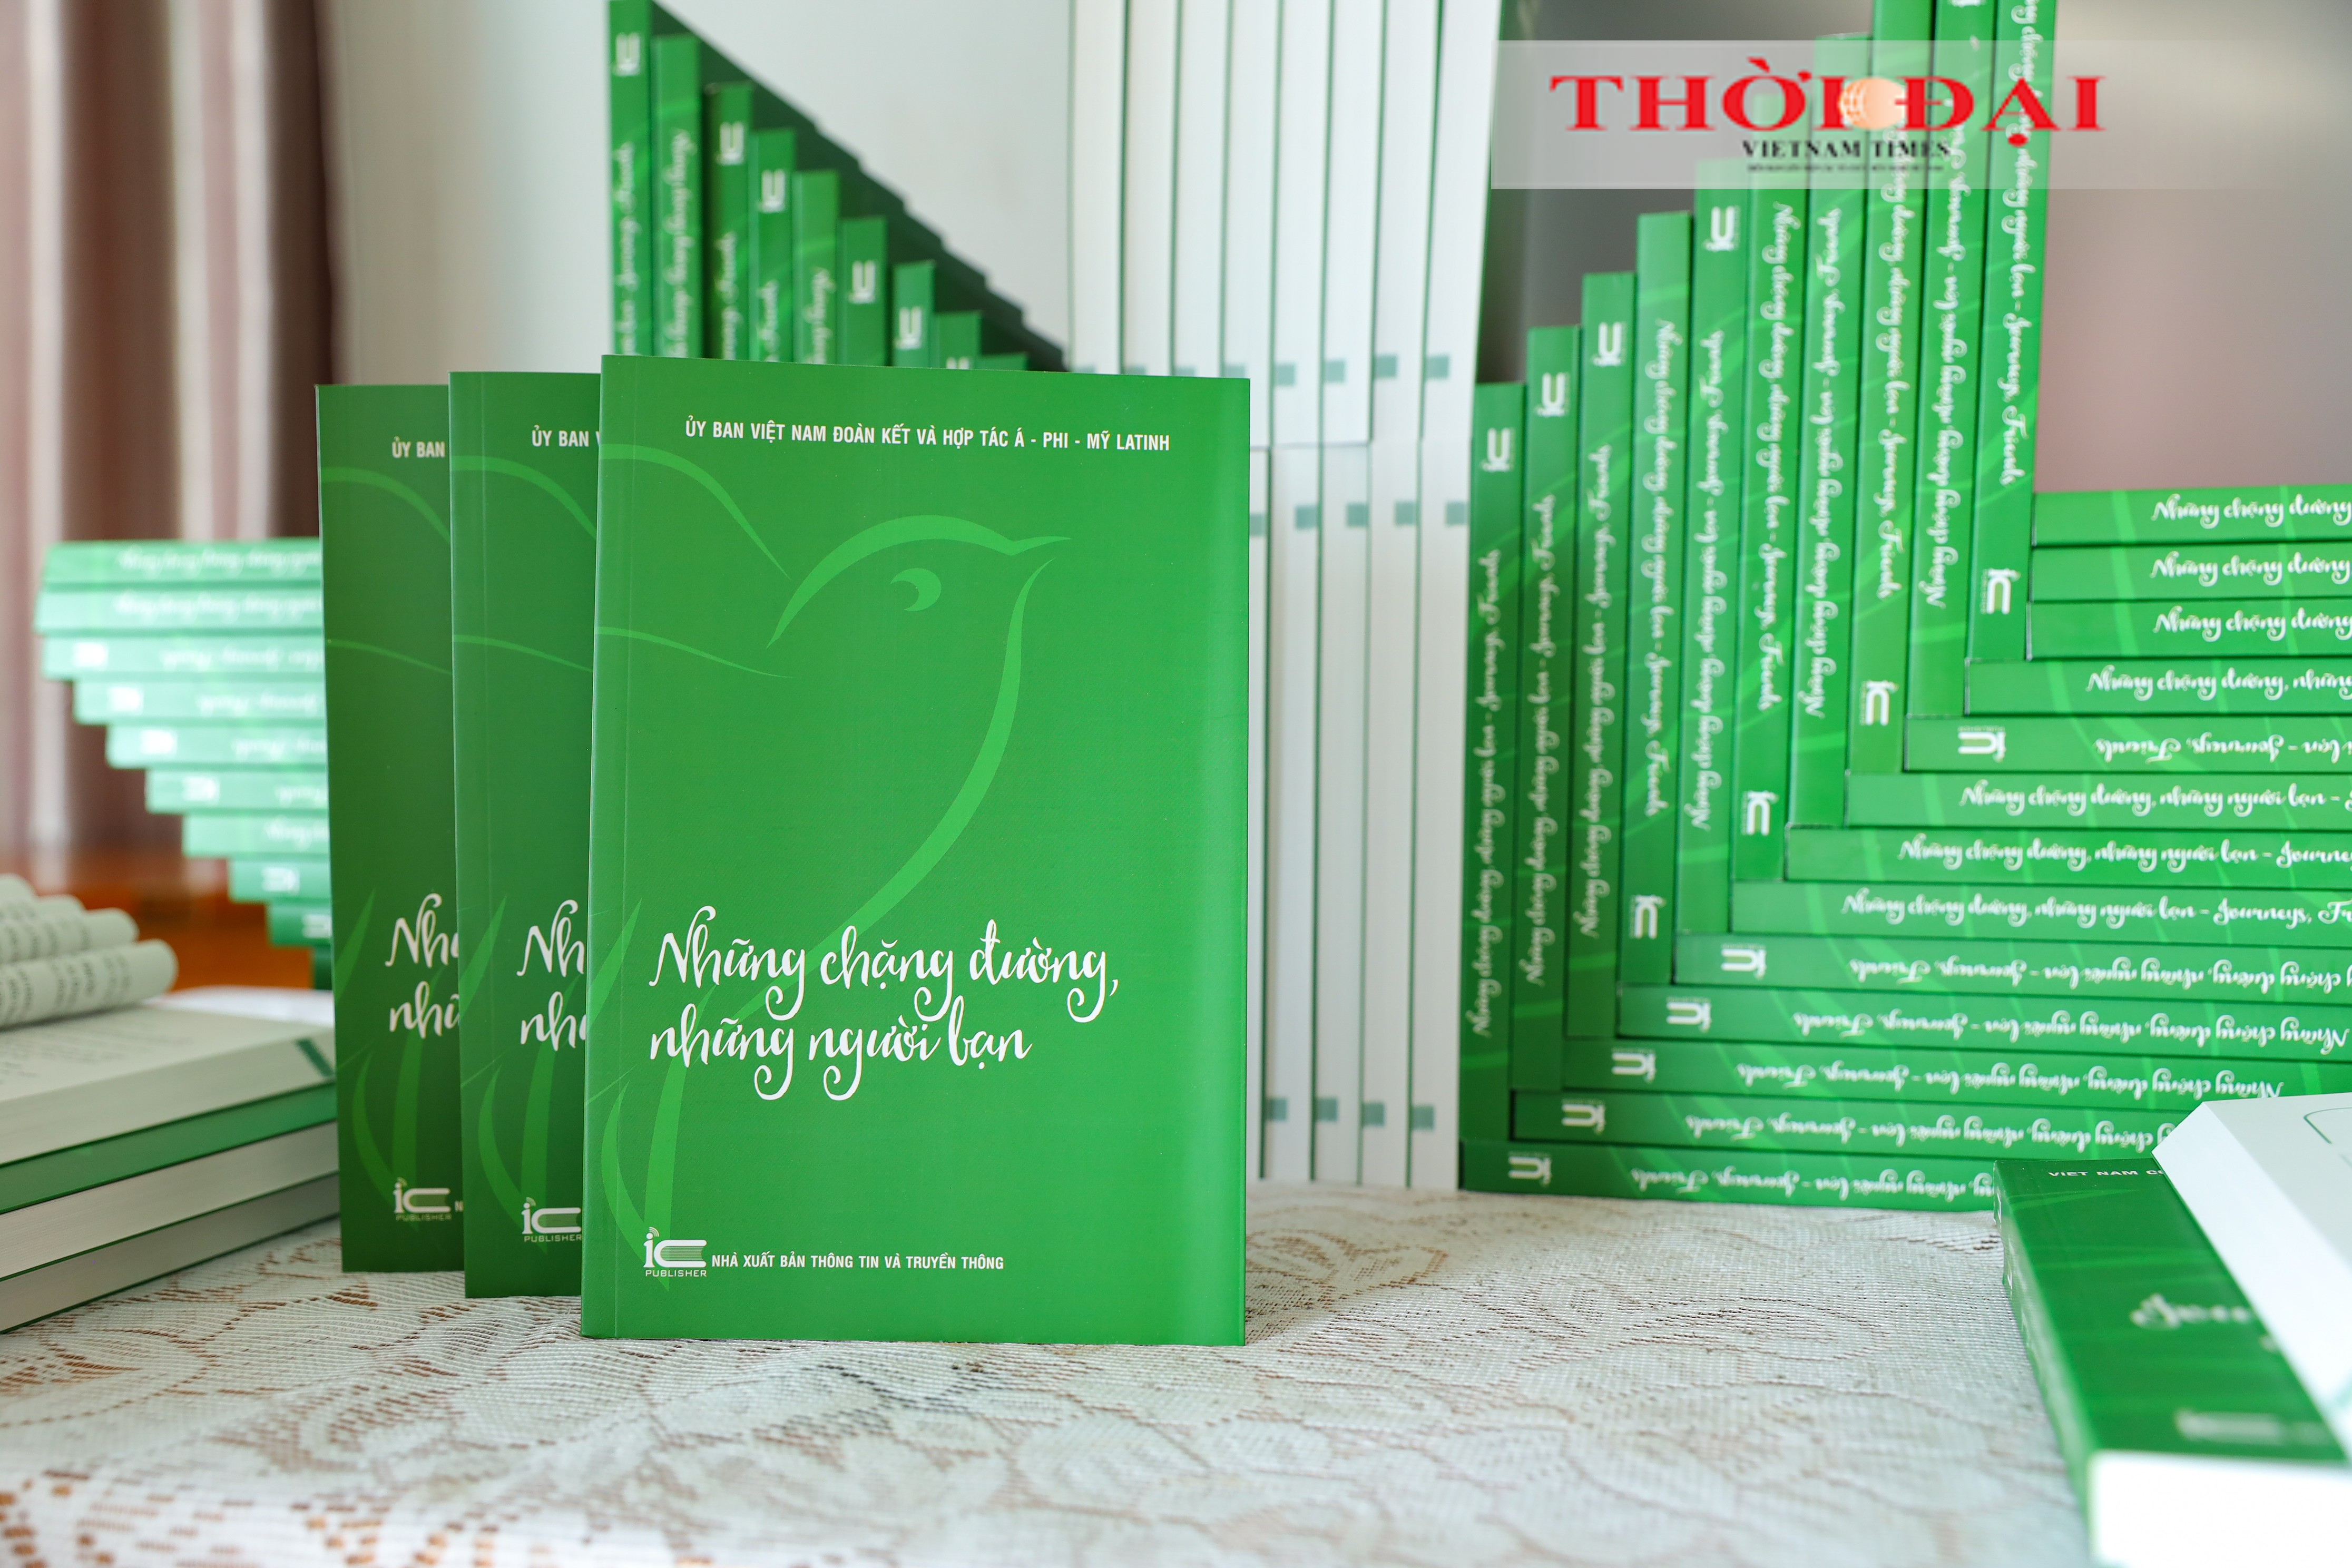 Книга напечатана на двух языках: на вьетнамском и английском языках, её объем превышает 300 страниц. (Фото: Динь Хоа)